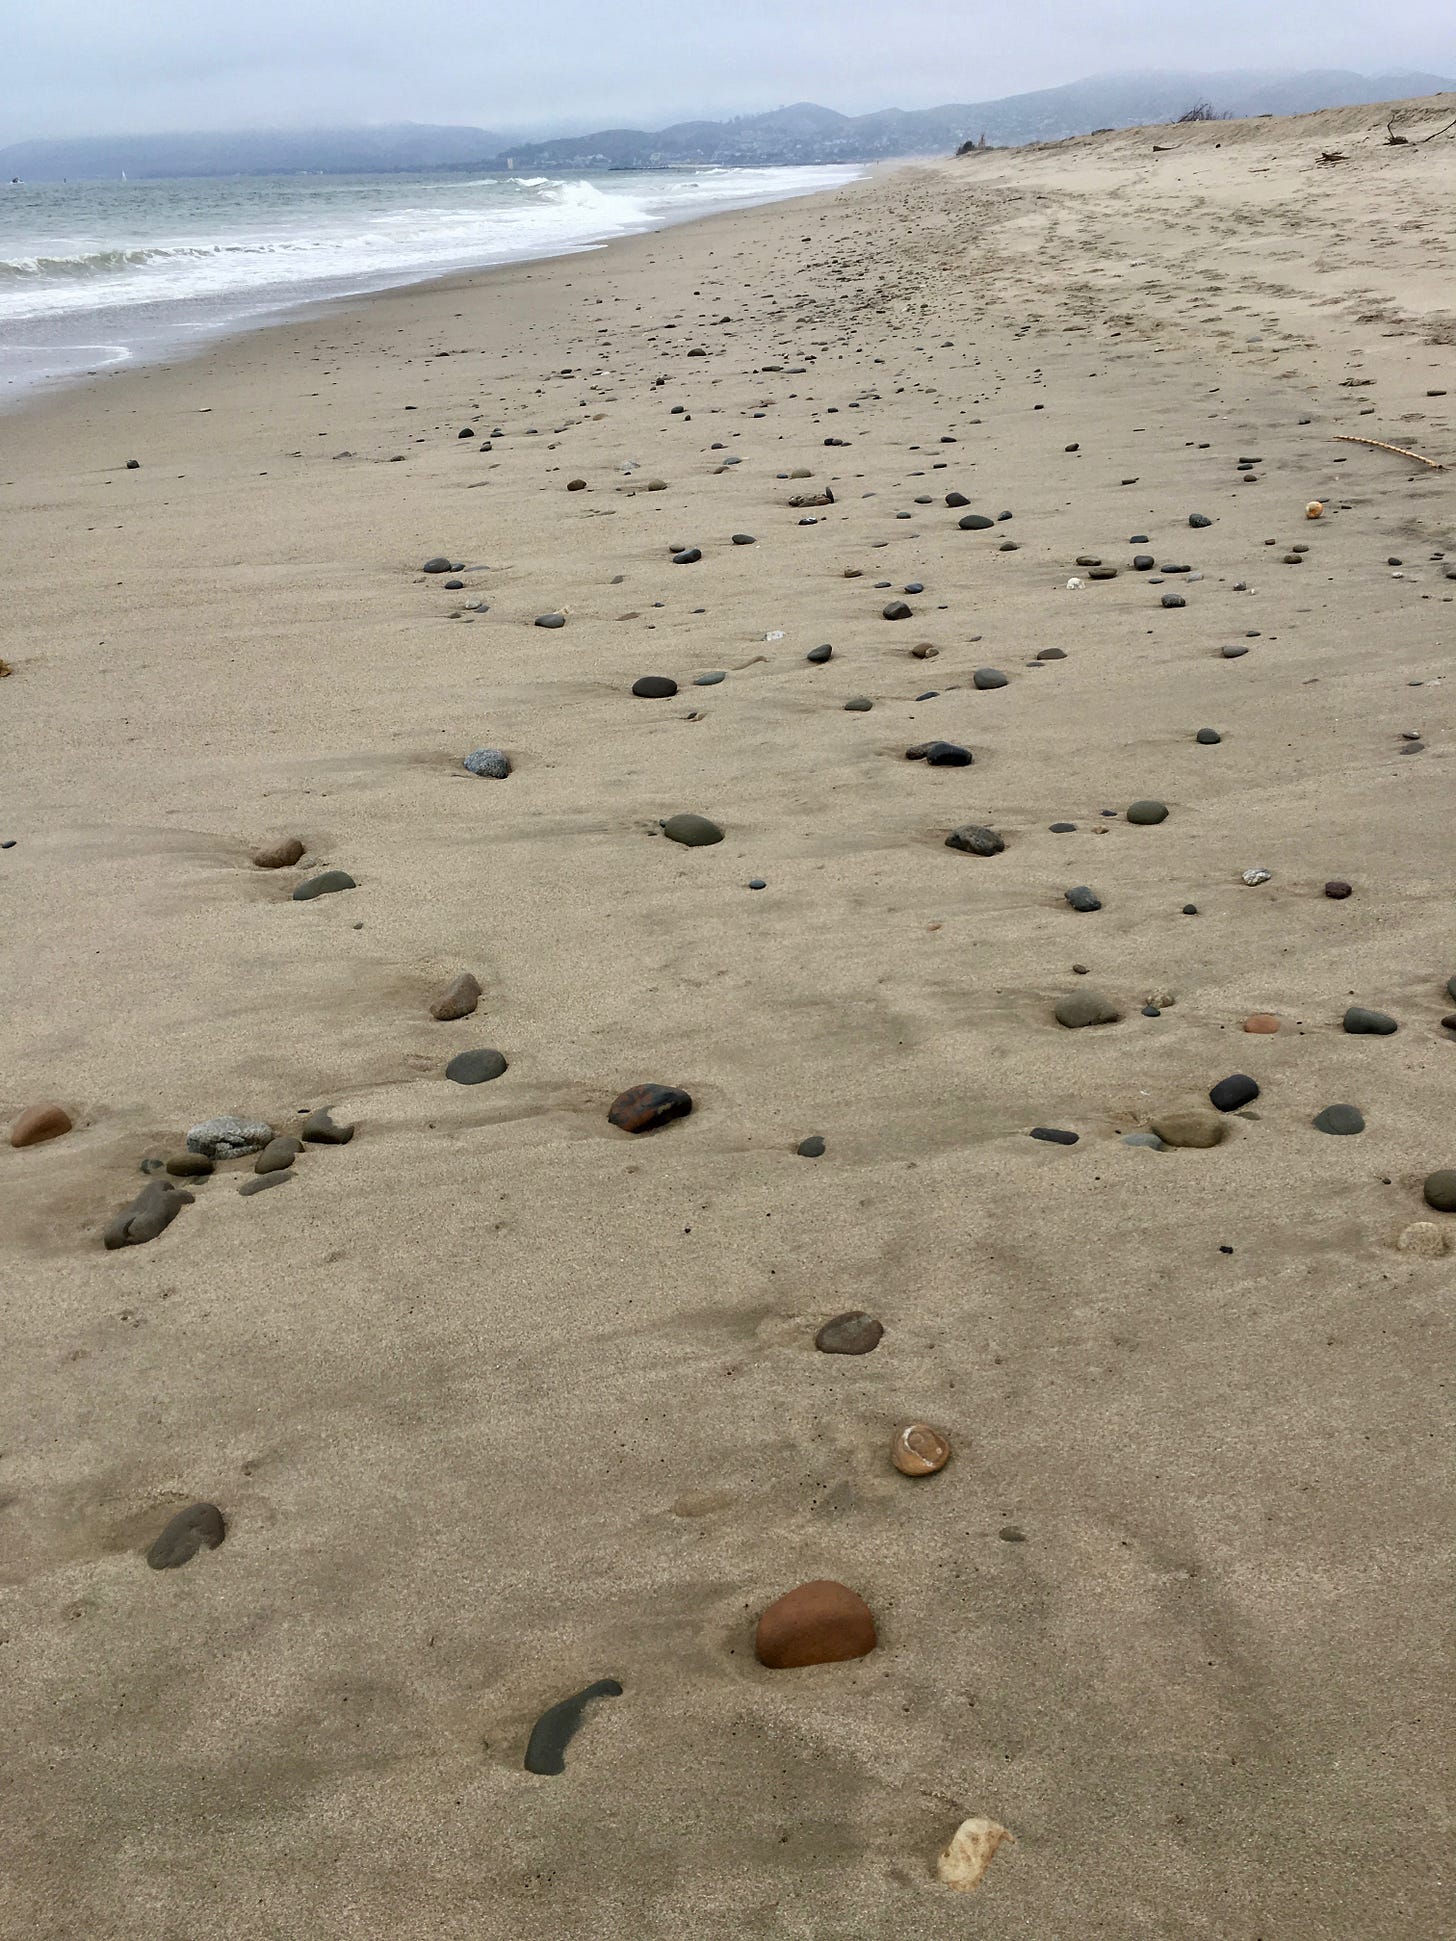 Beach stones in a rhythmic pattern